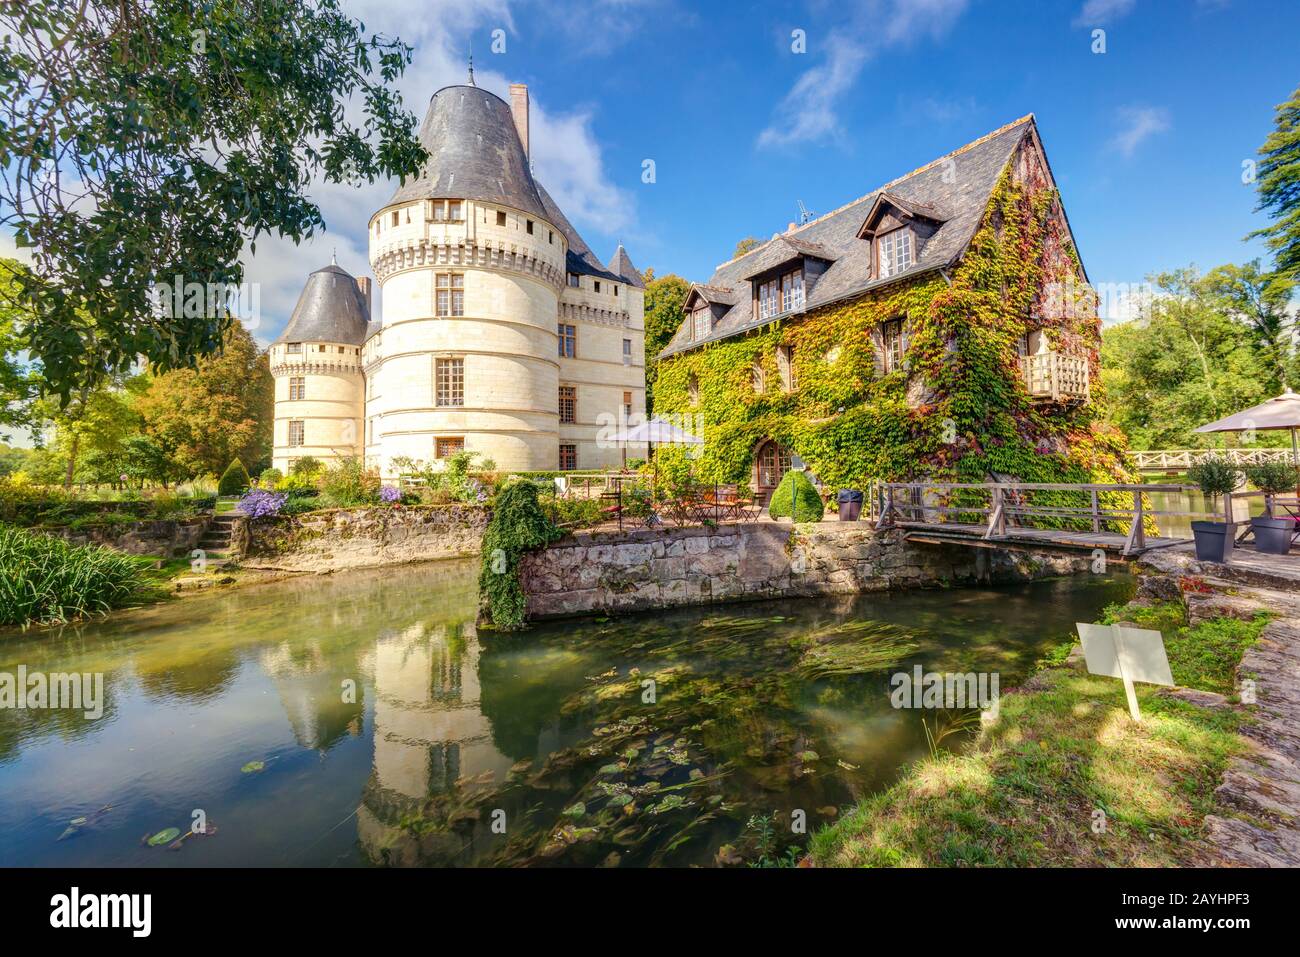 Le château de l'Islette, France. Ce château Renaissance est situé dans la vallée de la Loire, construit au XVIe siècle et est une attraction touristique. Banque D'Images